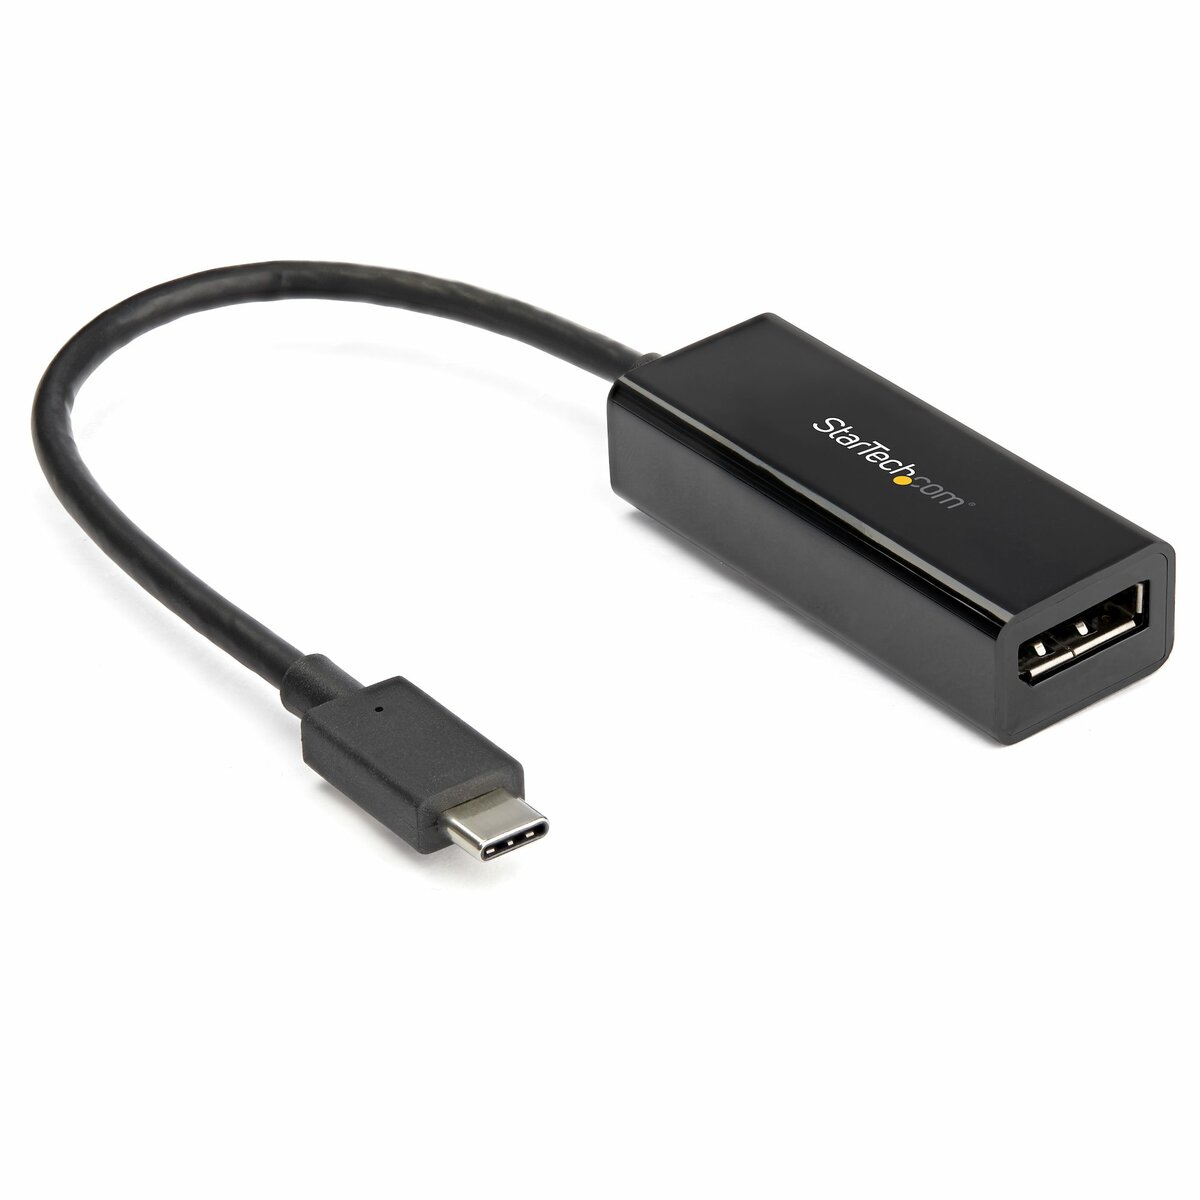 StarTech.com Carte d'acquisition vidéo HDMI USB-C - Compatible UVC - Carte  capture vidéo HDMI 1080p pour Mac et Windows (UVCHDCAP) - adaptateur de  capture vidéo - USB 3.0 - Conformité TAA - UVCHDCAP